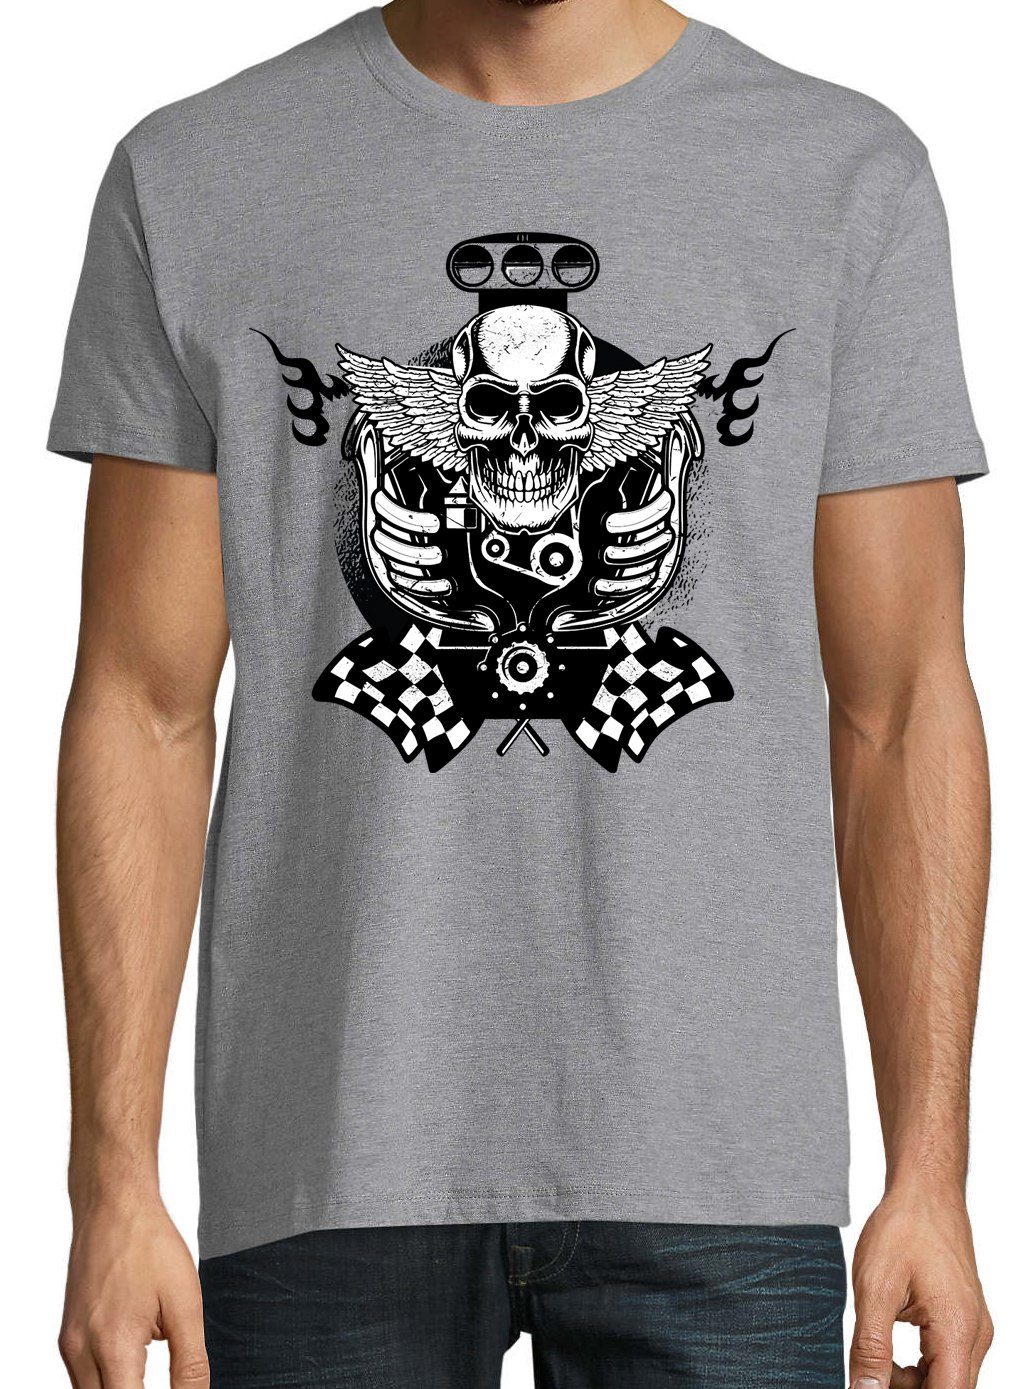 T-Shirt Schädel Designz trendigem Motor Grau Shirt Youth mit Herren Frontprint